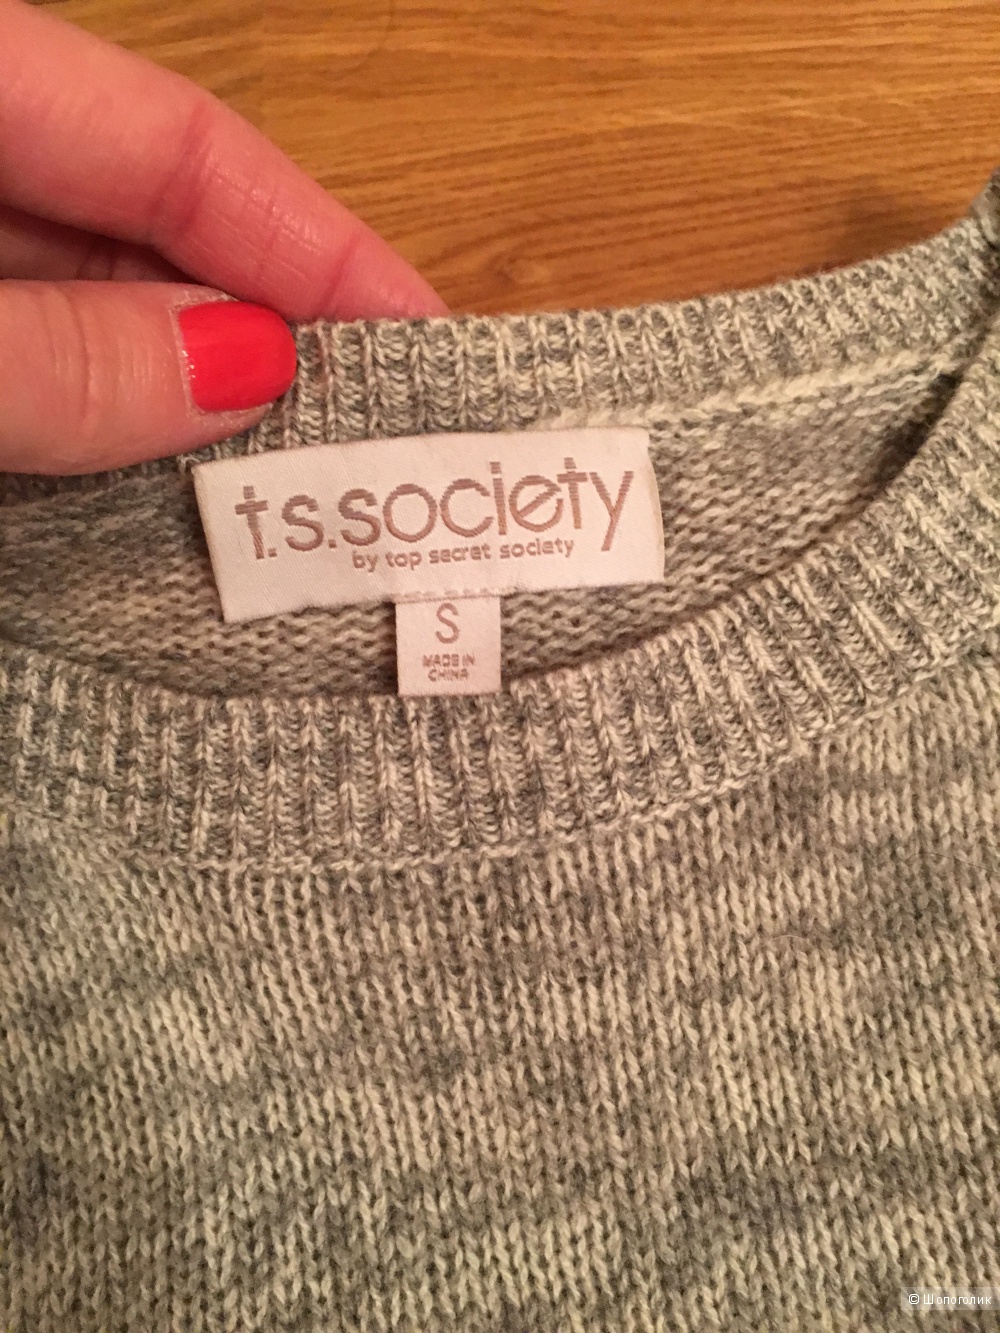 Сет: свитер t.s.society, топ, S